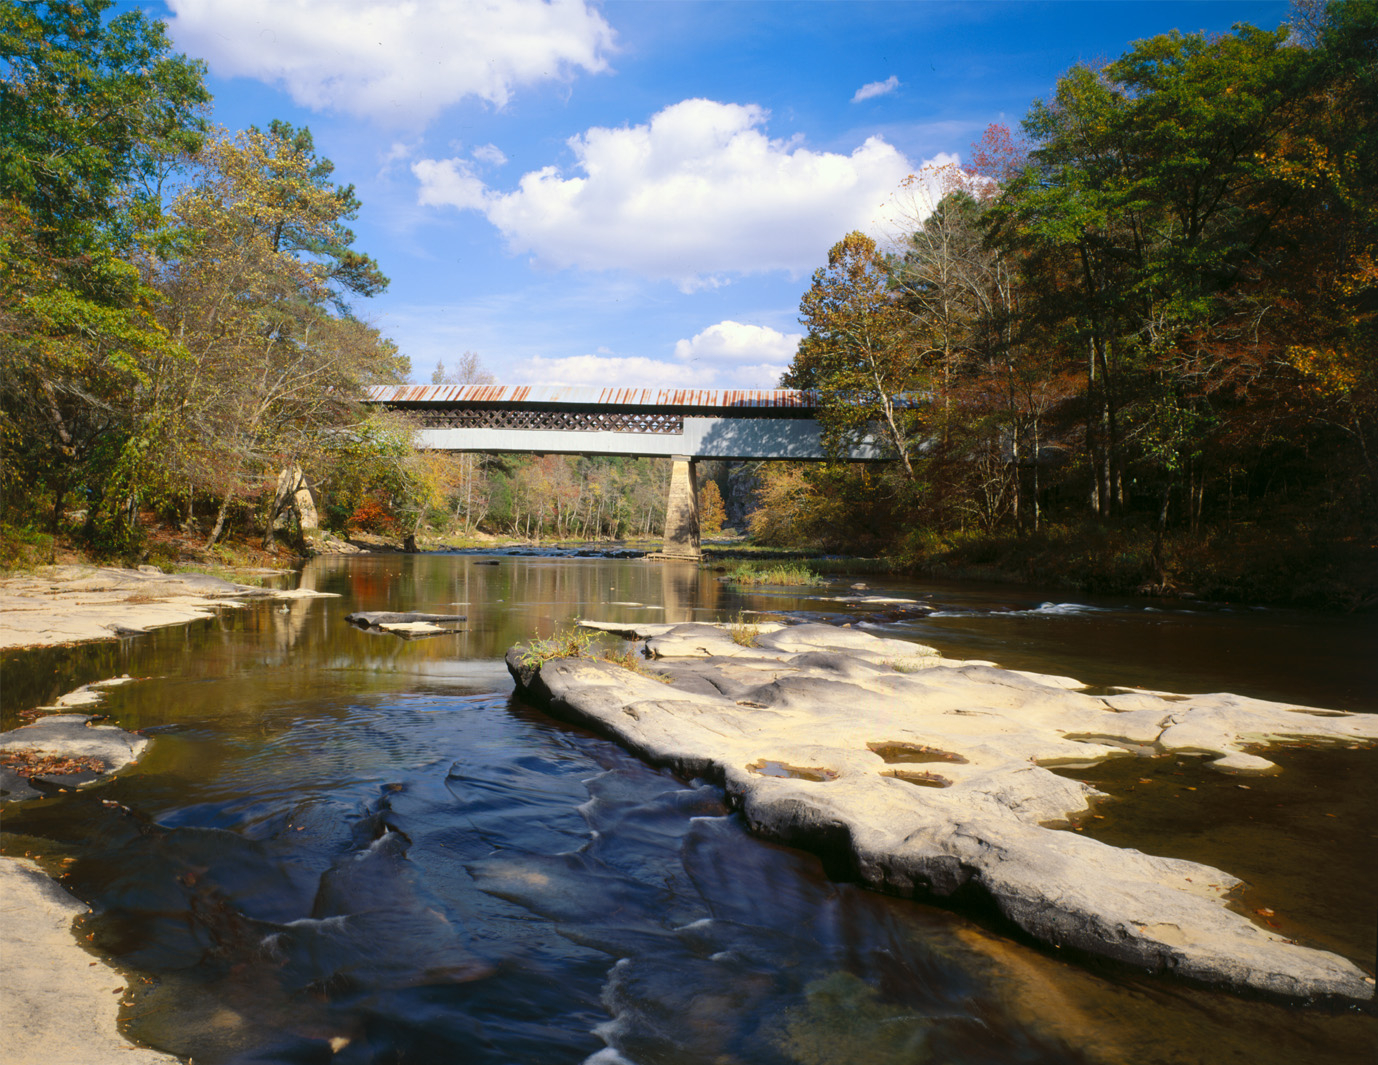 Swann Covered Bridge in Hayden, Alabama